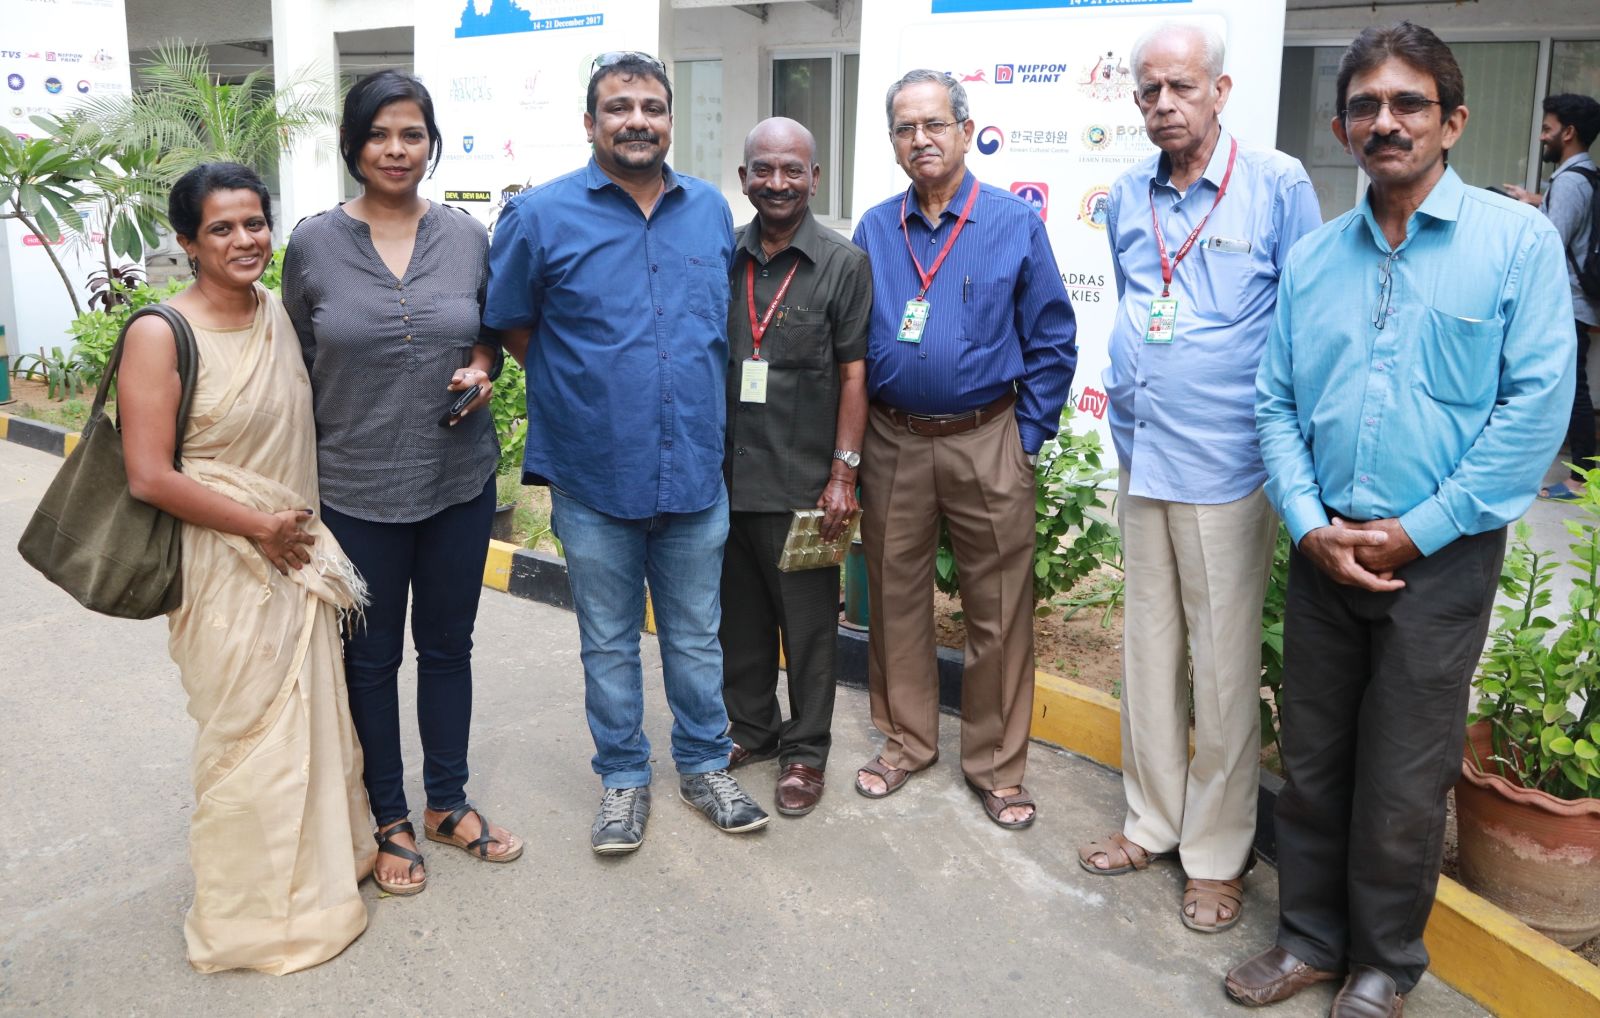 Vikram Vedha Directors Pushkar – Gayathri at 15th Chennai International Film Festival Pics (1)